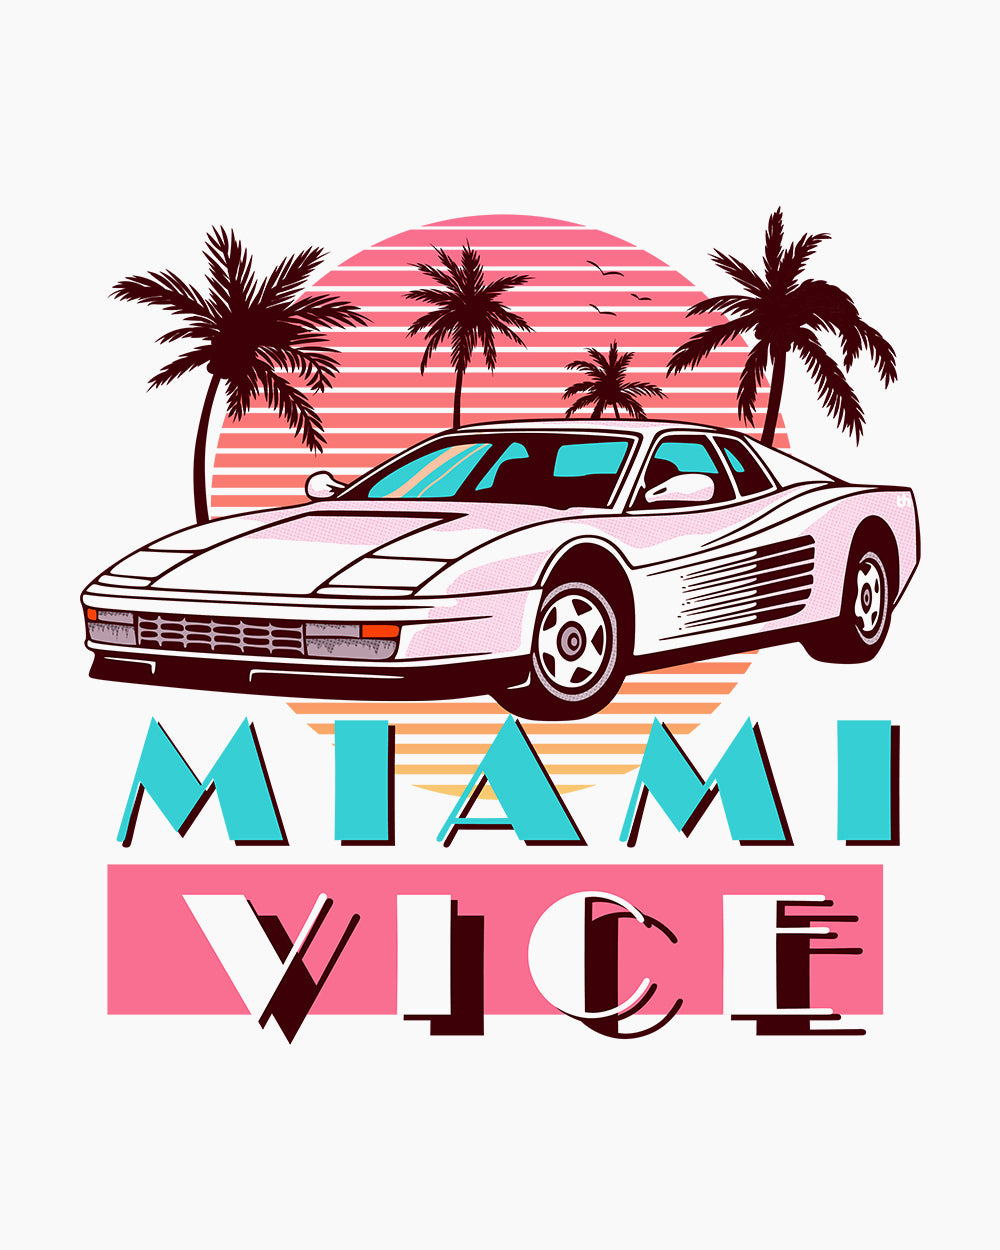 Miami Vice Long Sleeve Australia Online #colour_white